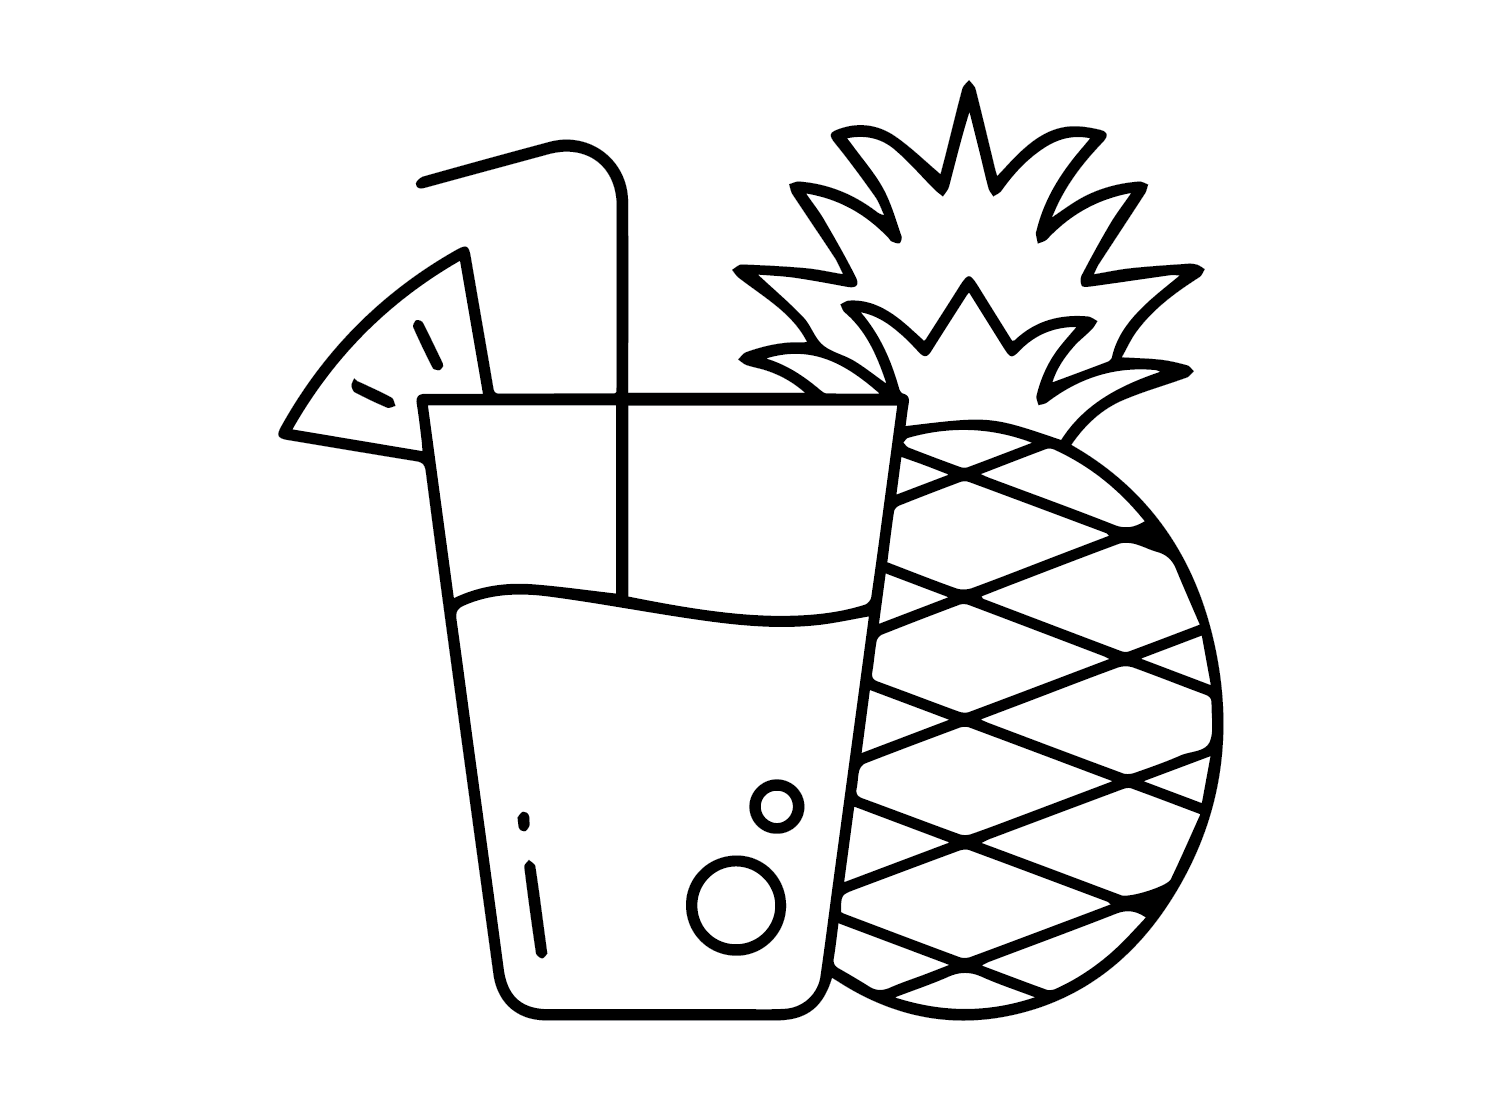 用菠萝打印菠萝